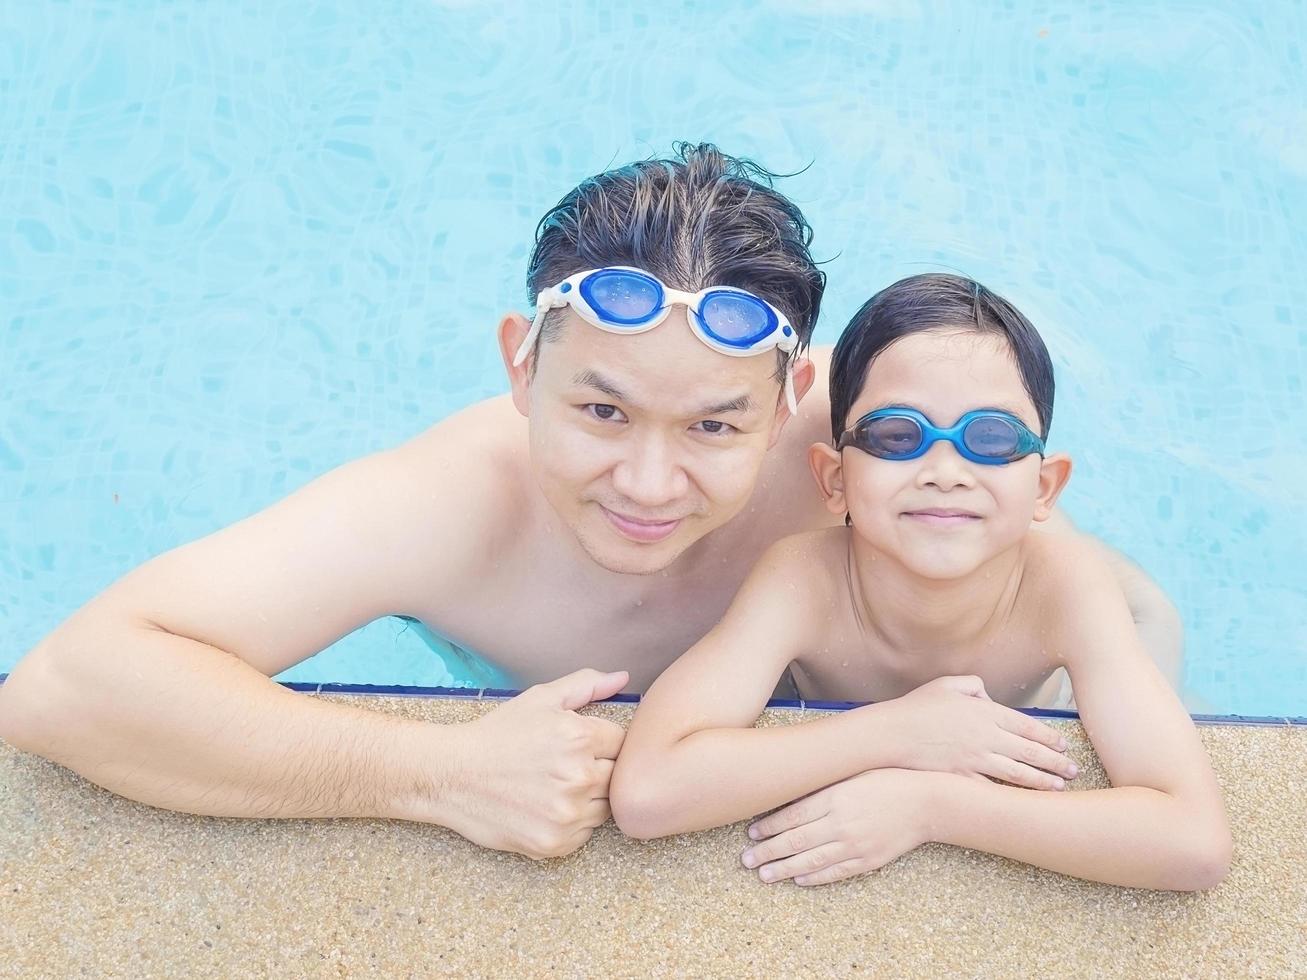 père et fils dans une piscine photo